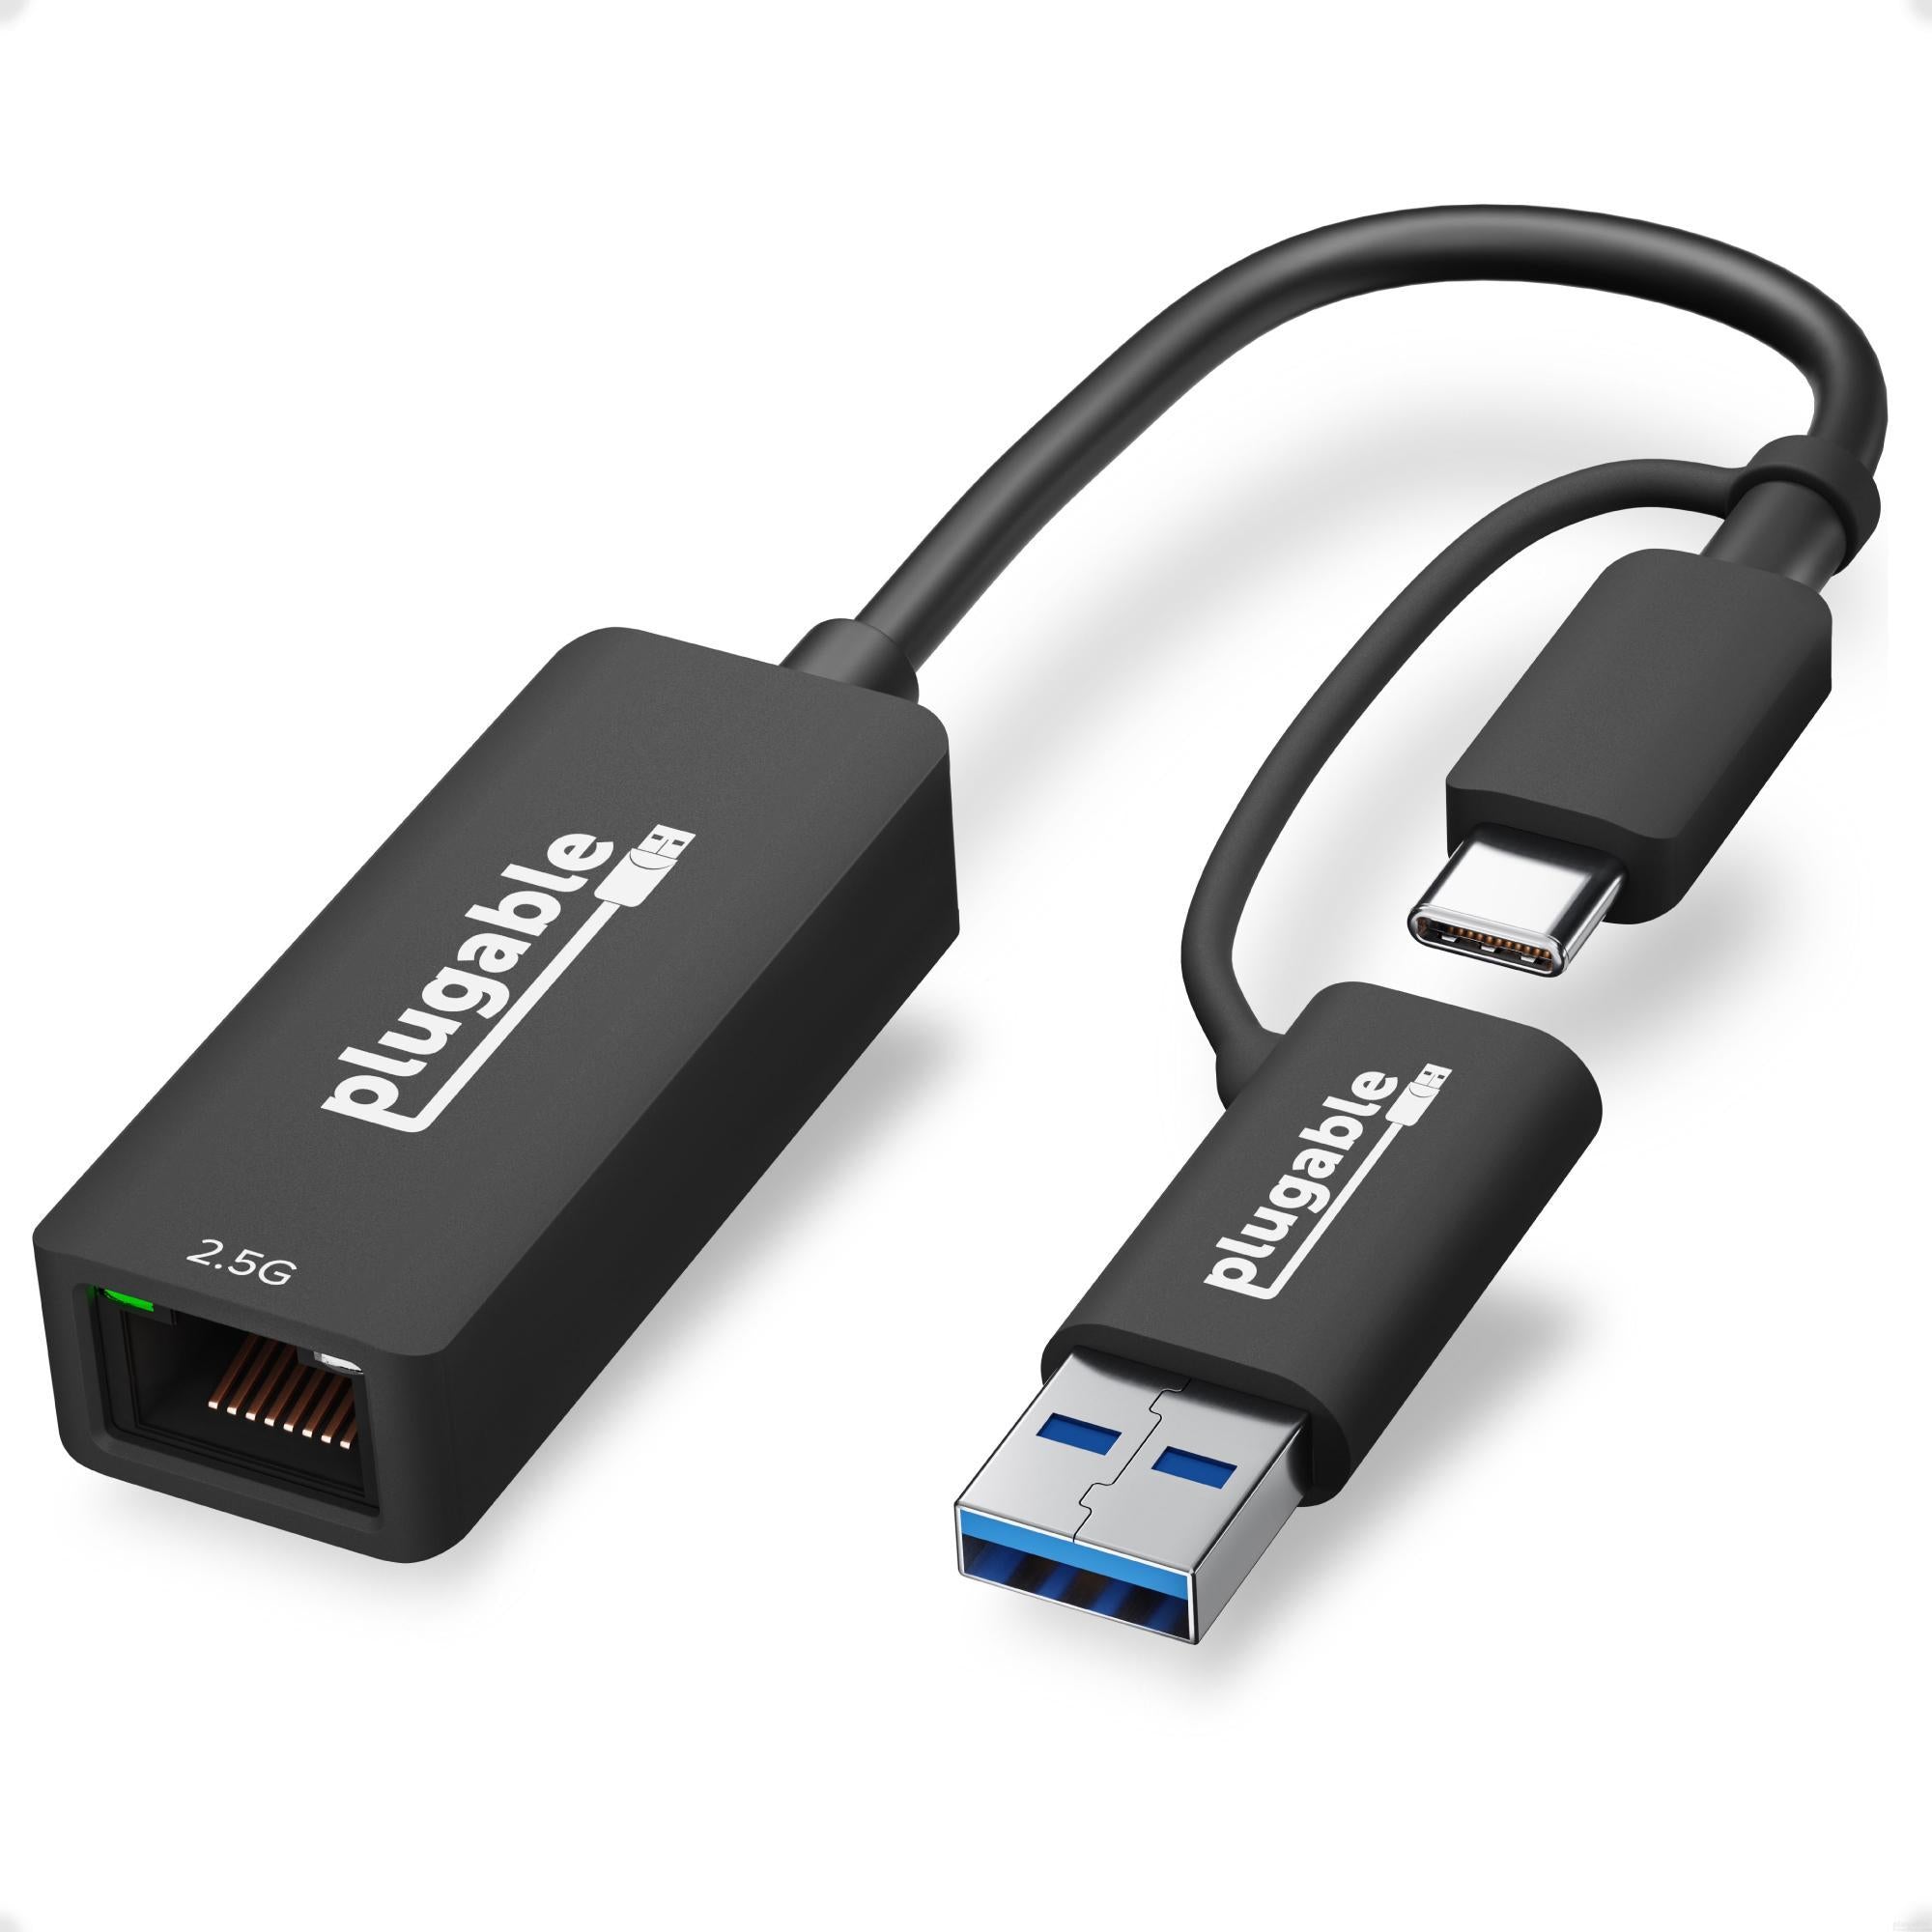 vinkel Ashley Furman Hvad er der galt Plugable 2.5G USB-C and USB to Ethernet Adapter – Plugable Technologies